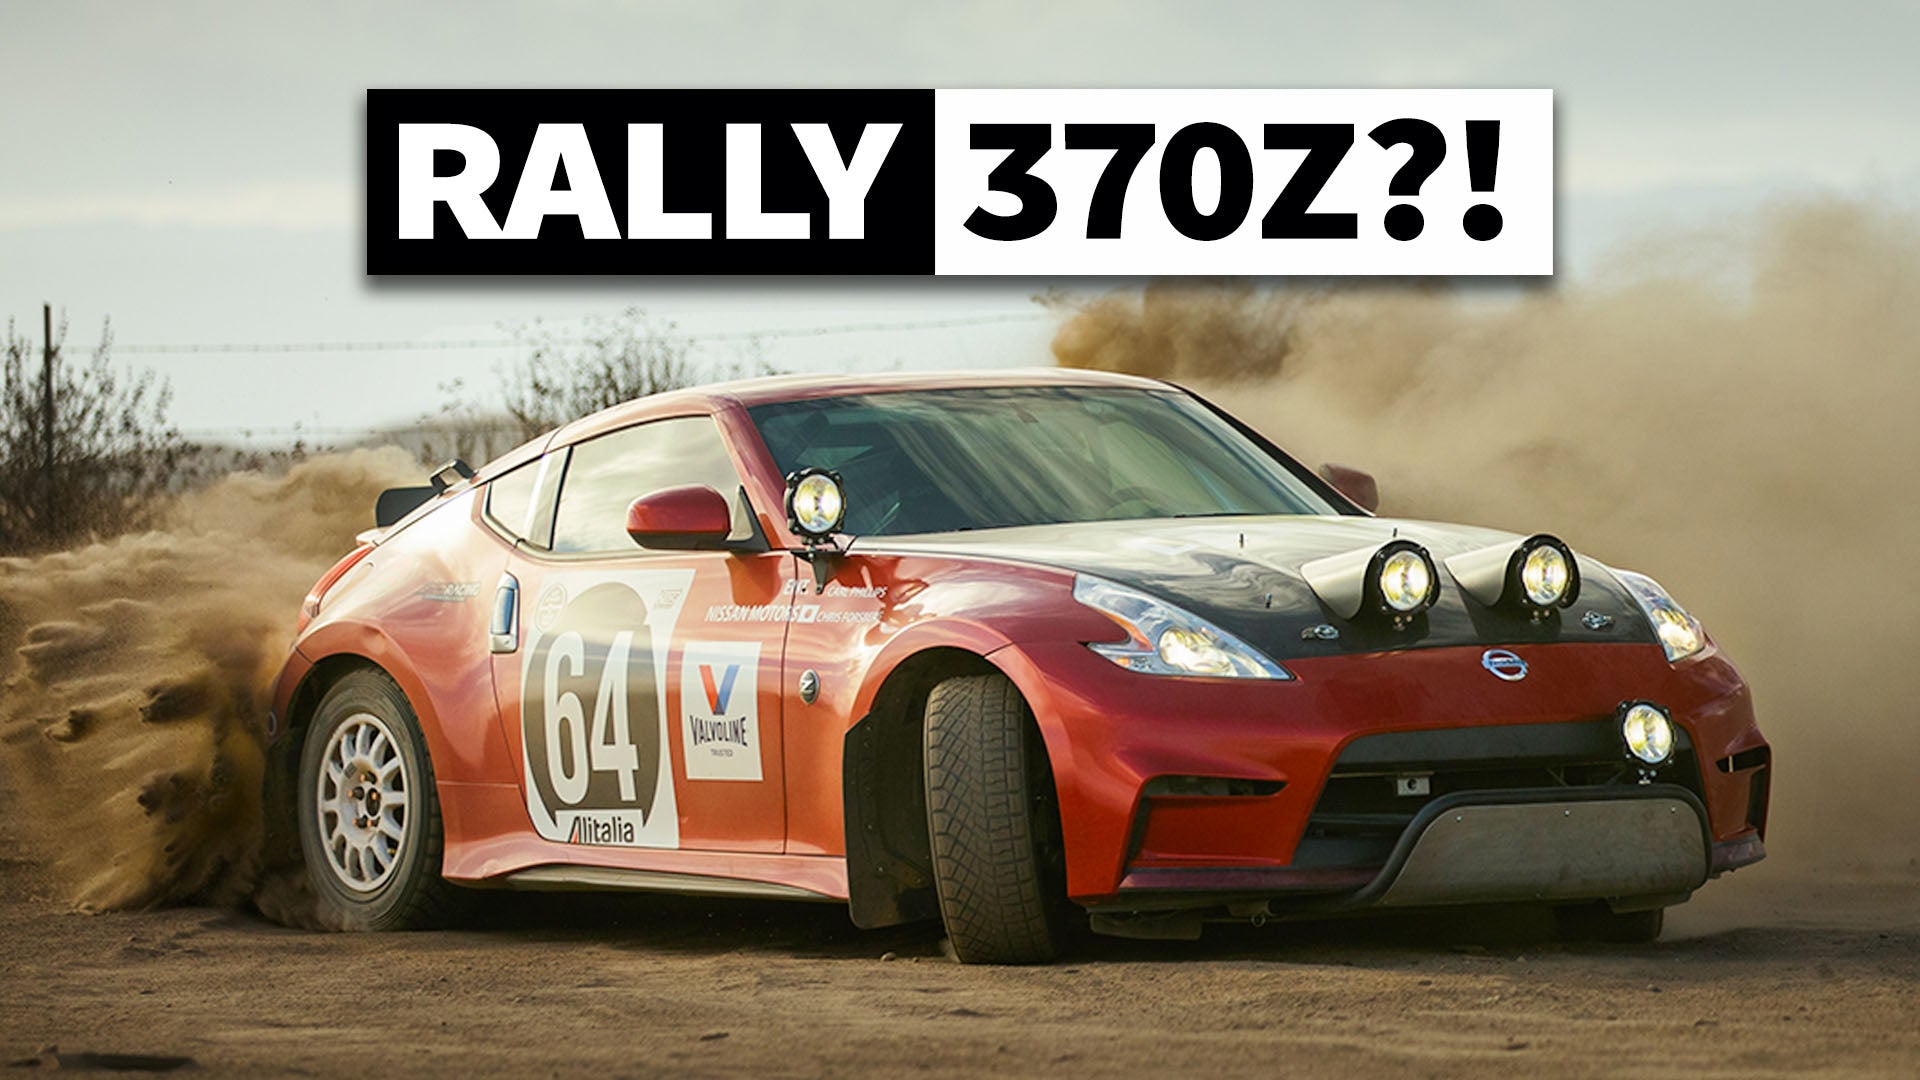 Chris Forsberg’s 370z Rally Car Tribute: Sideways Gravel Shreds!